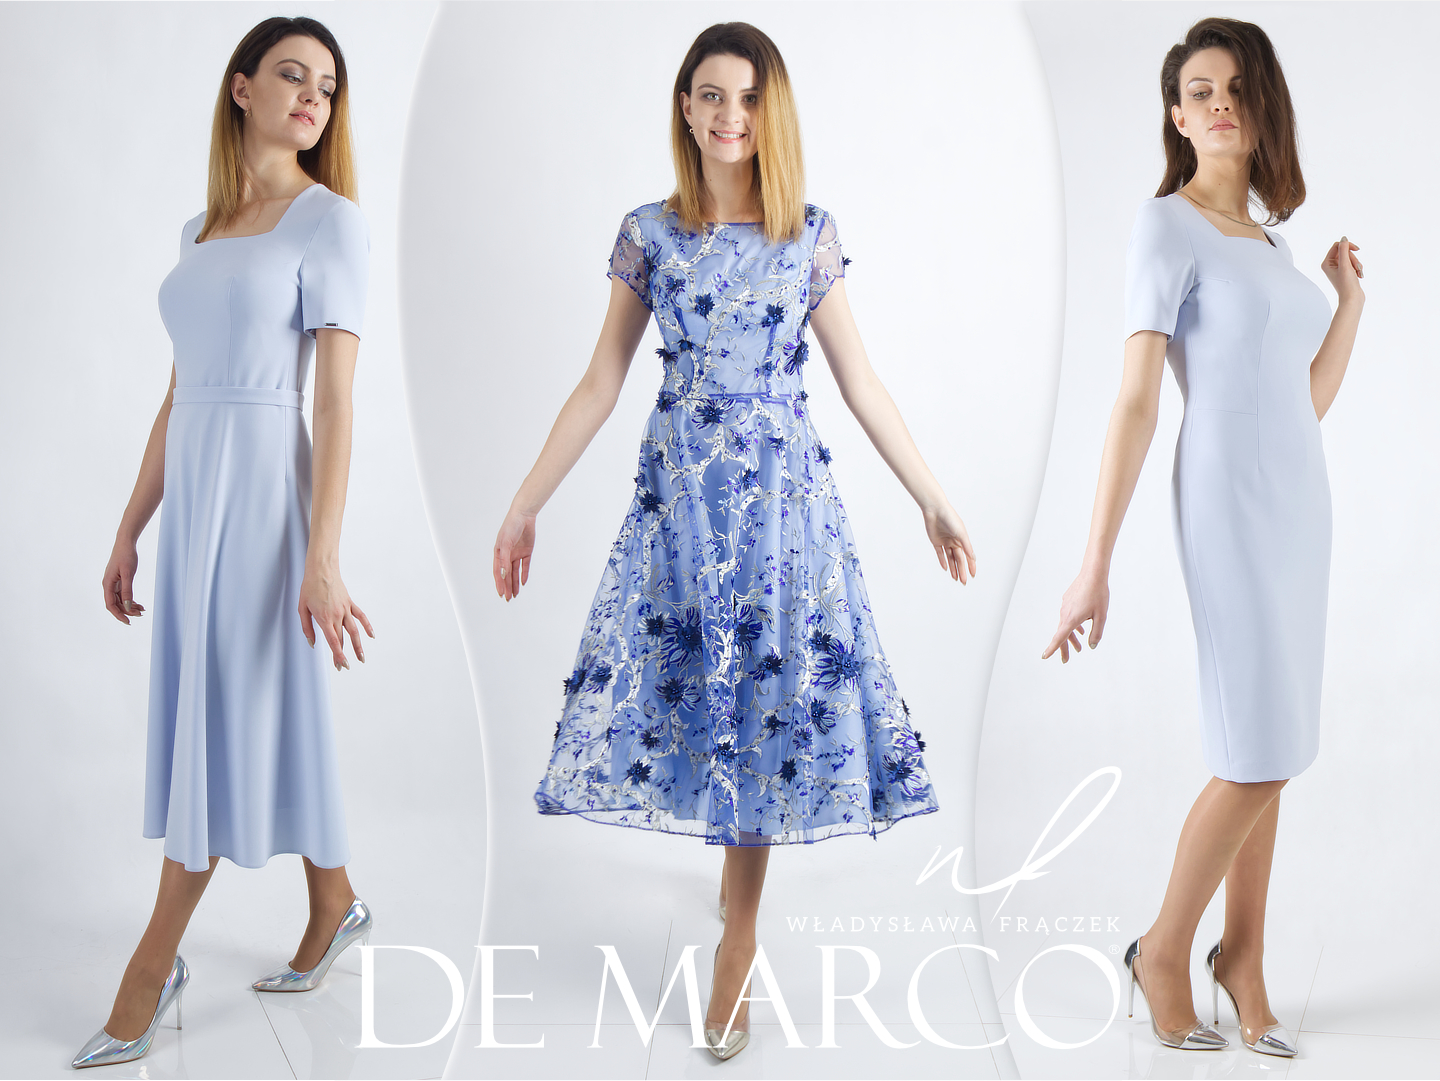  Sukienka na wesele dla 50 latki Proste klasyczne sukienki na wesele De Marco polska firma, luksusowa marka. Zwiewne sukienki na wesele